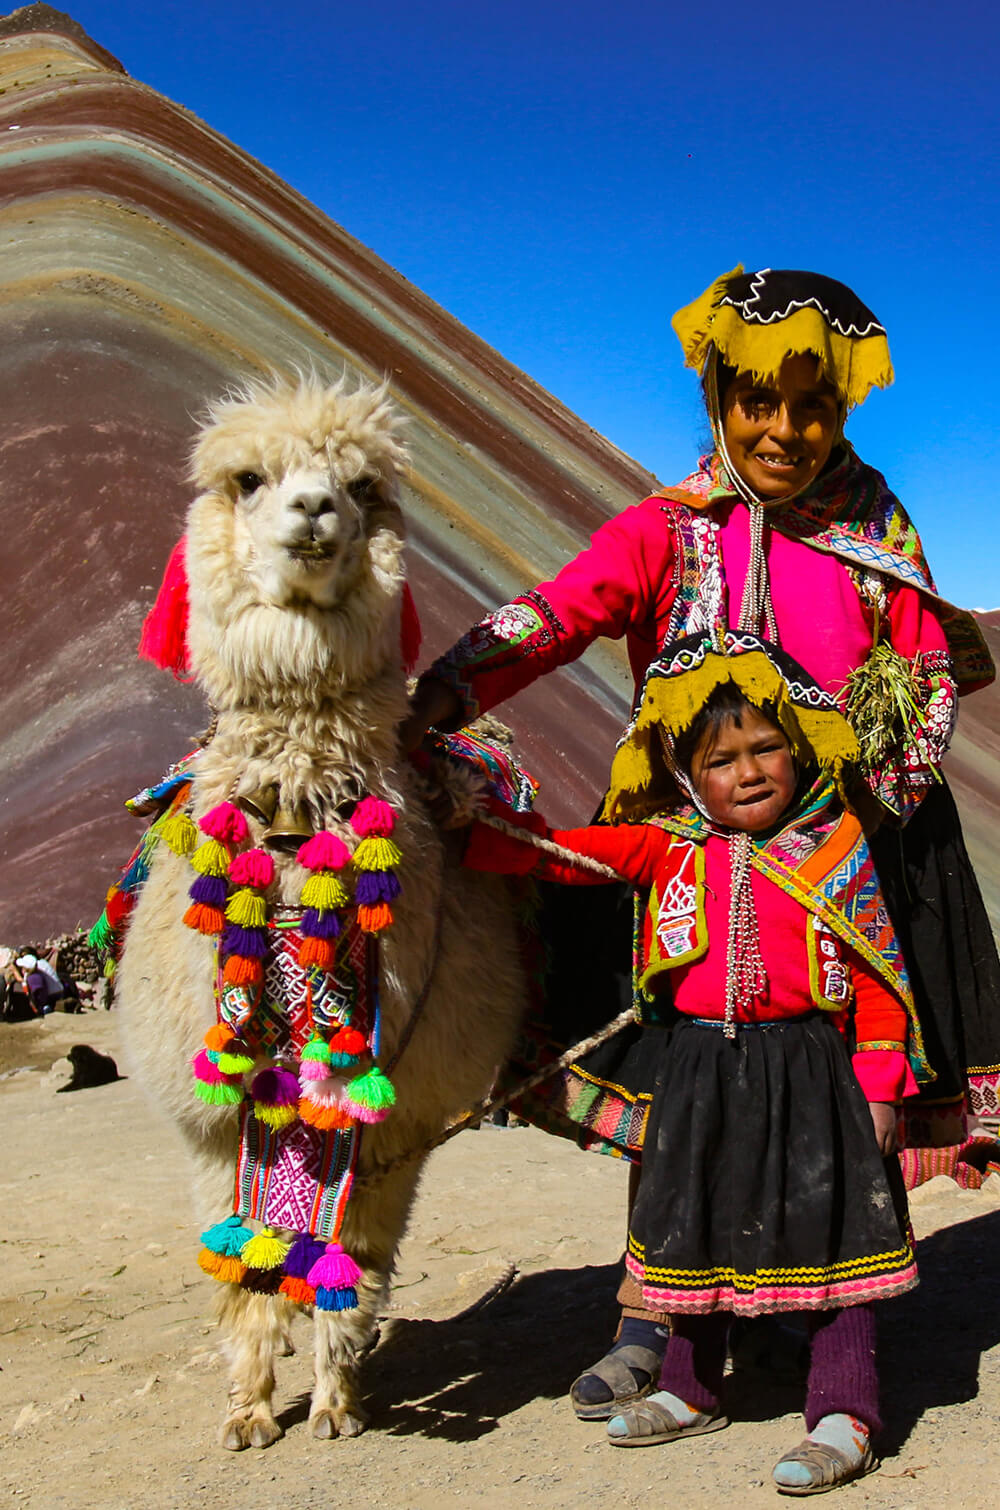 Esperando las vacaciones? Los mejores outfits para viajar a Cusco